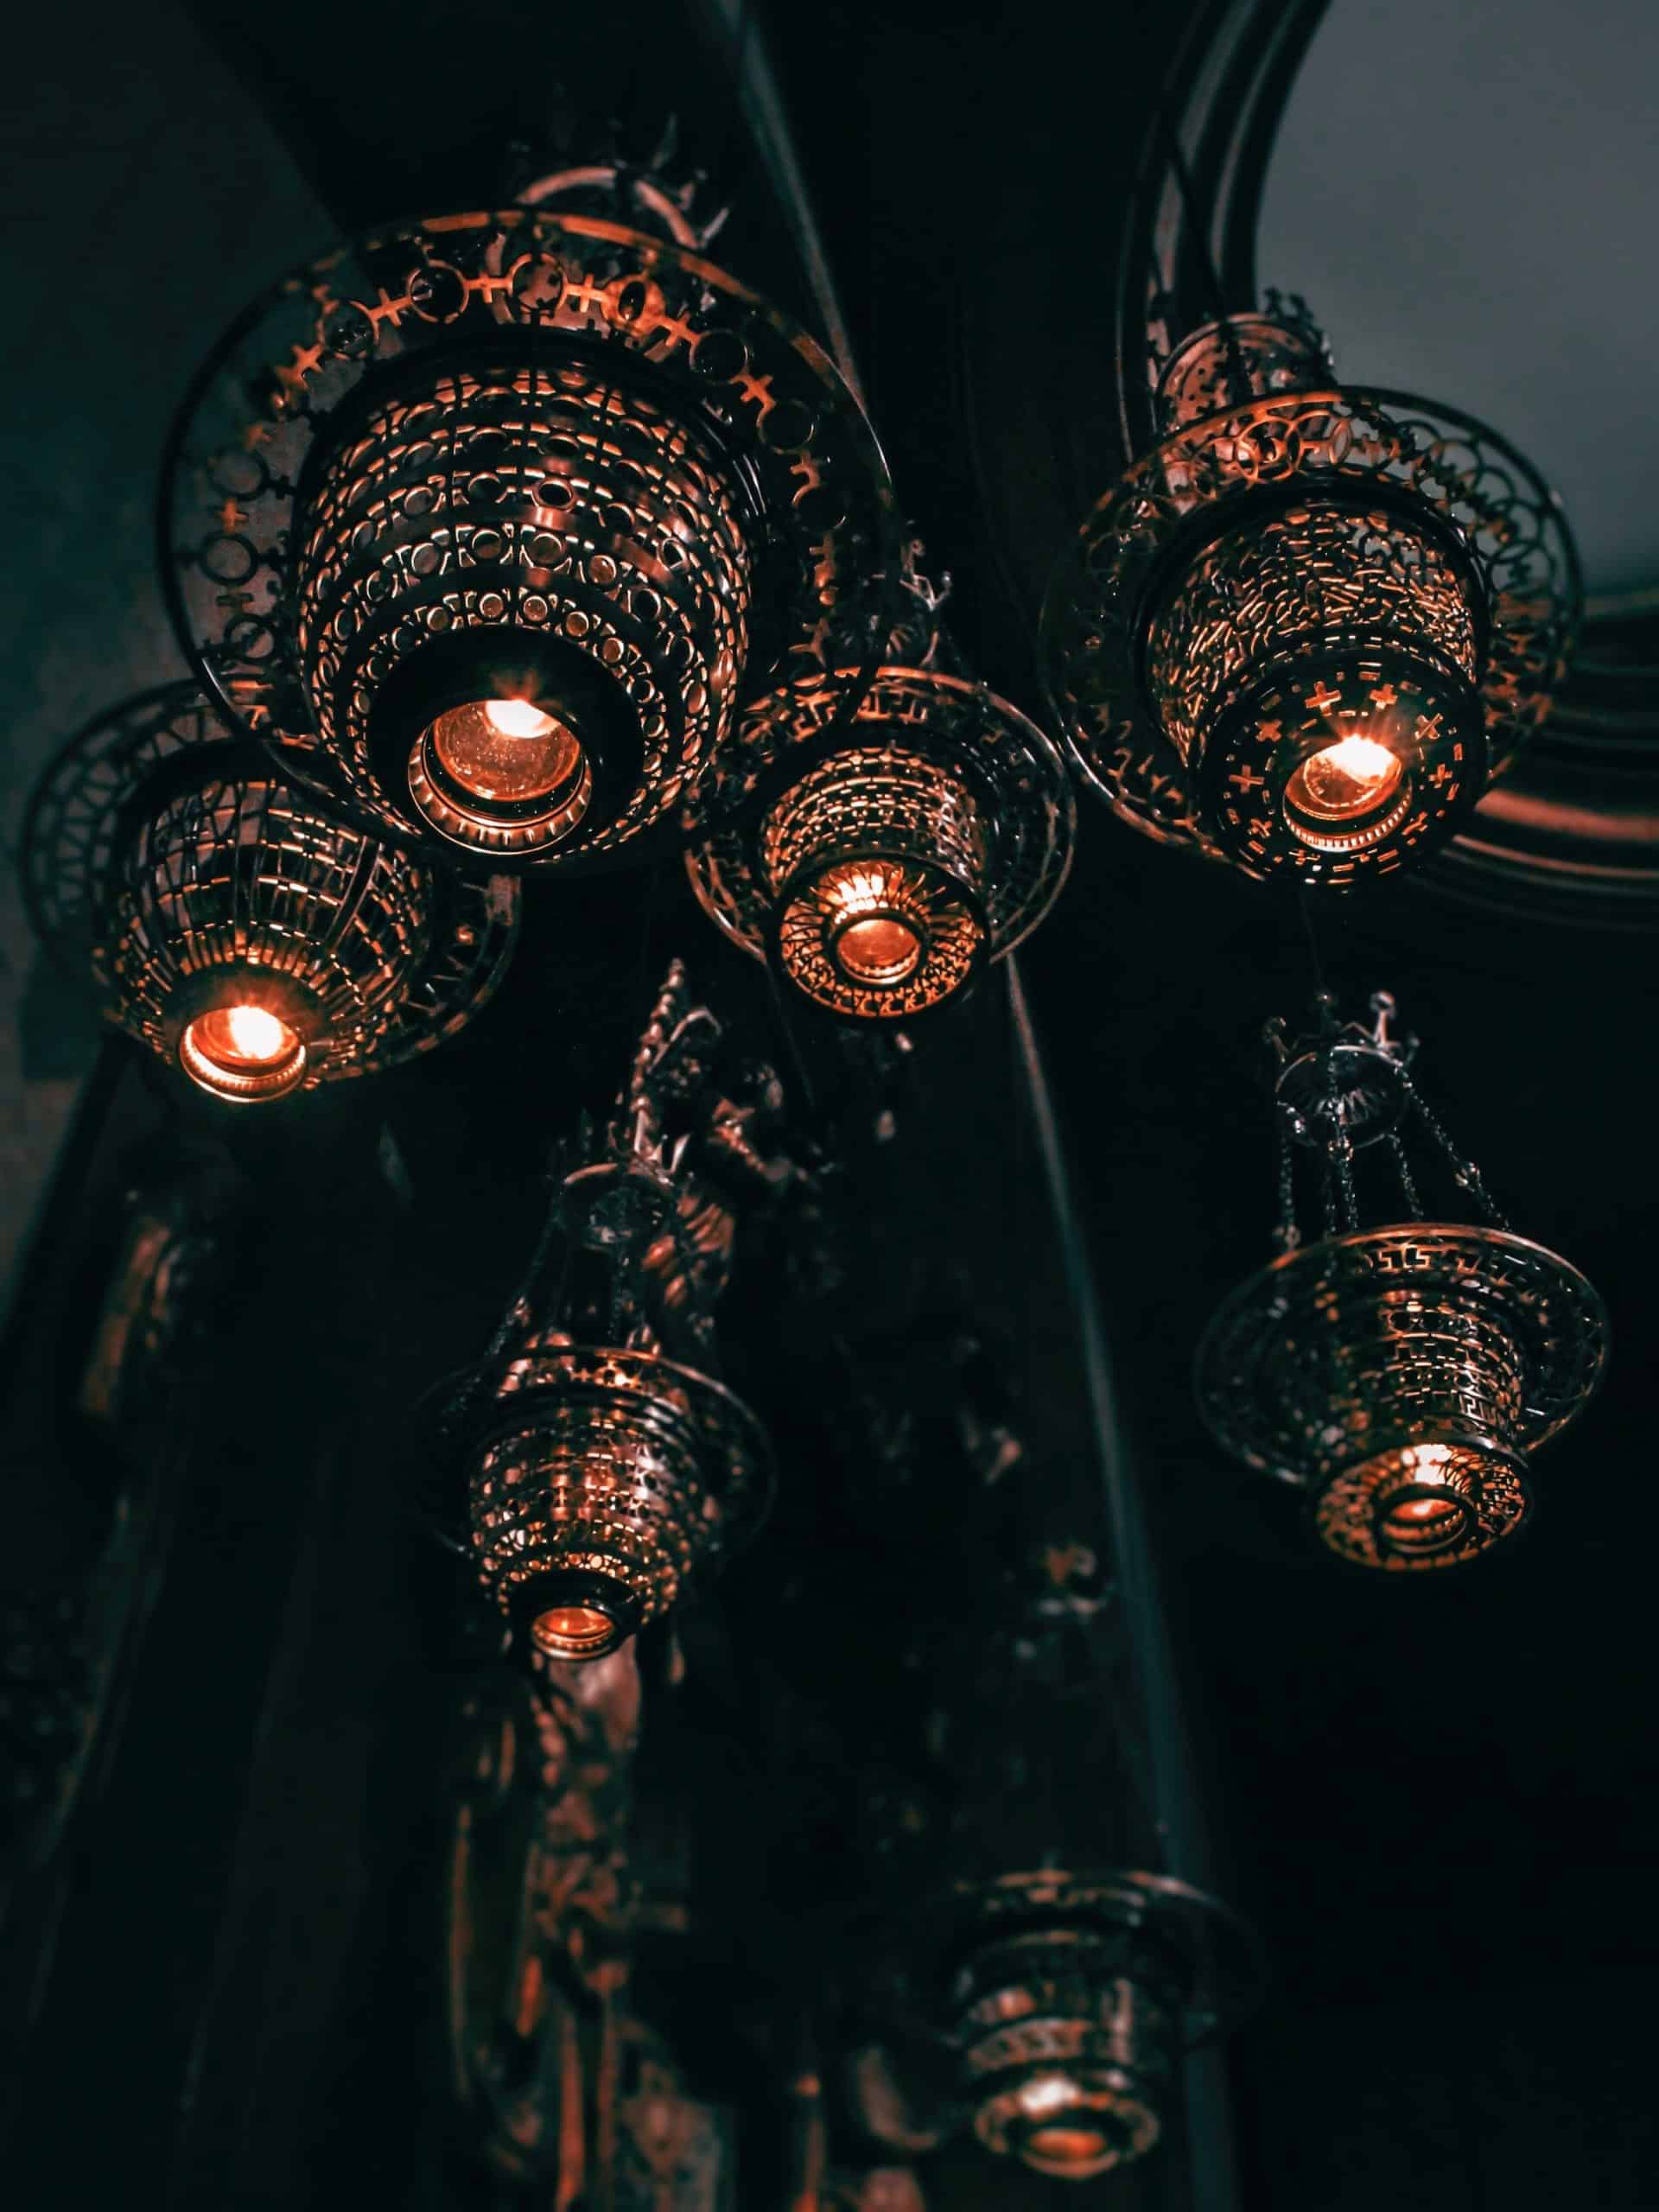 Antique metallic lamps